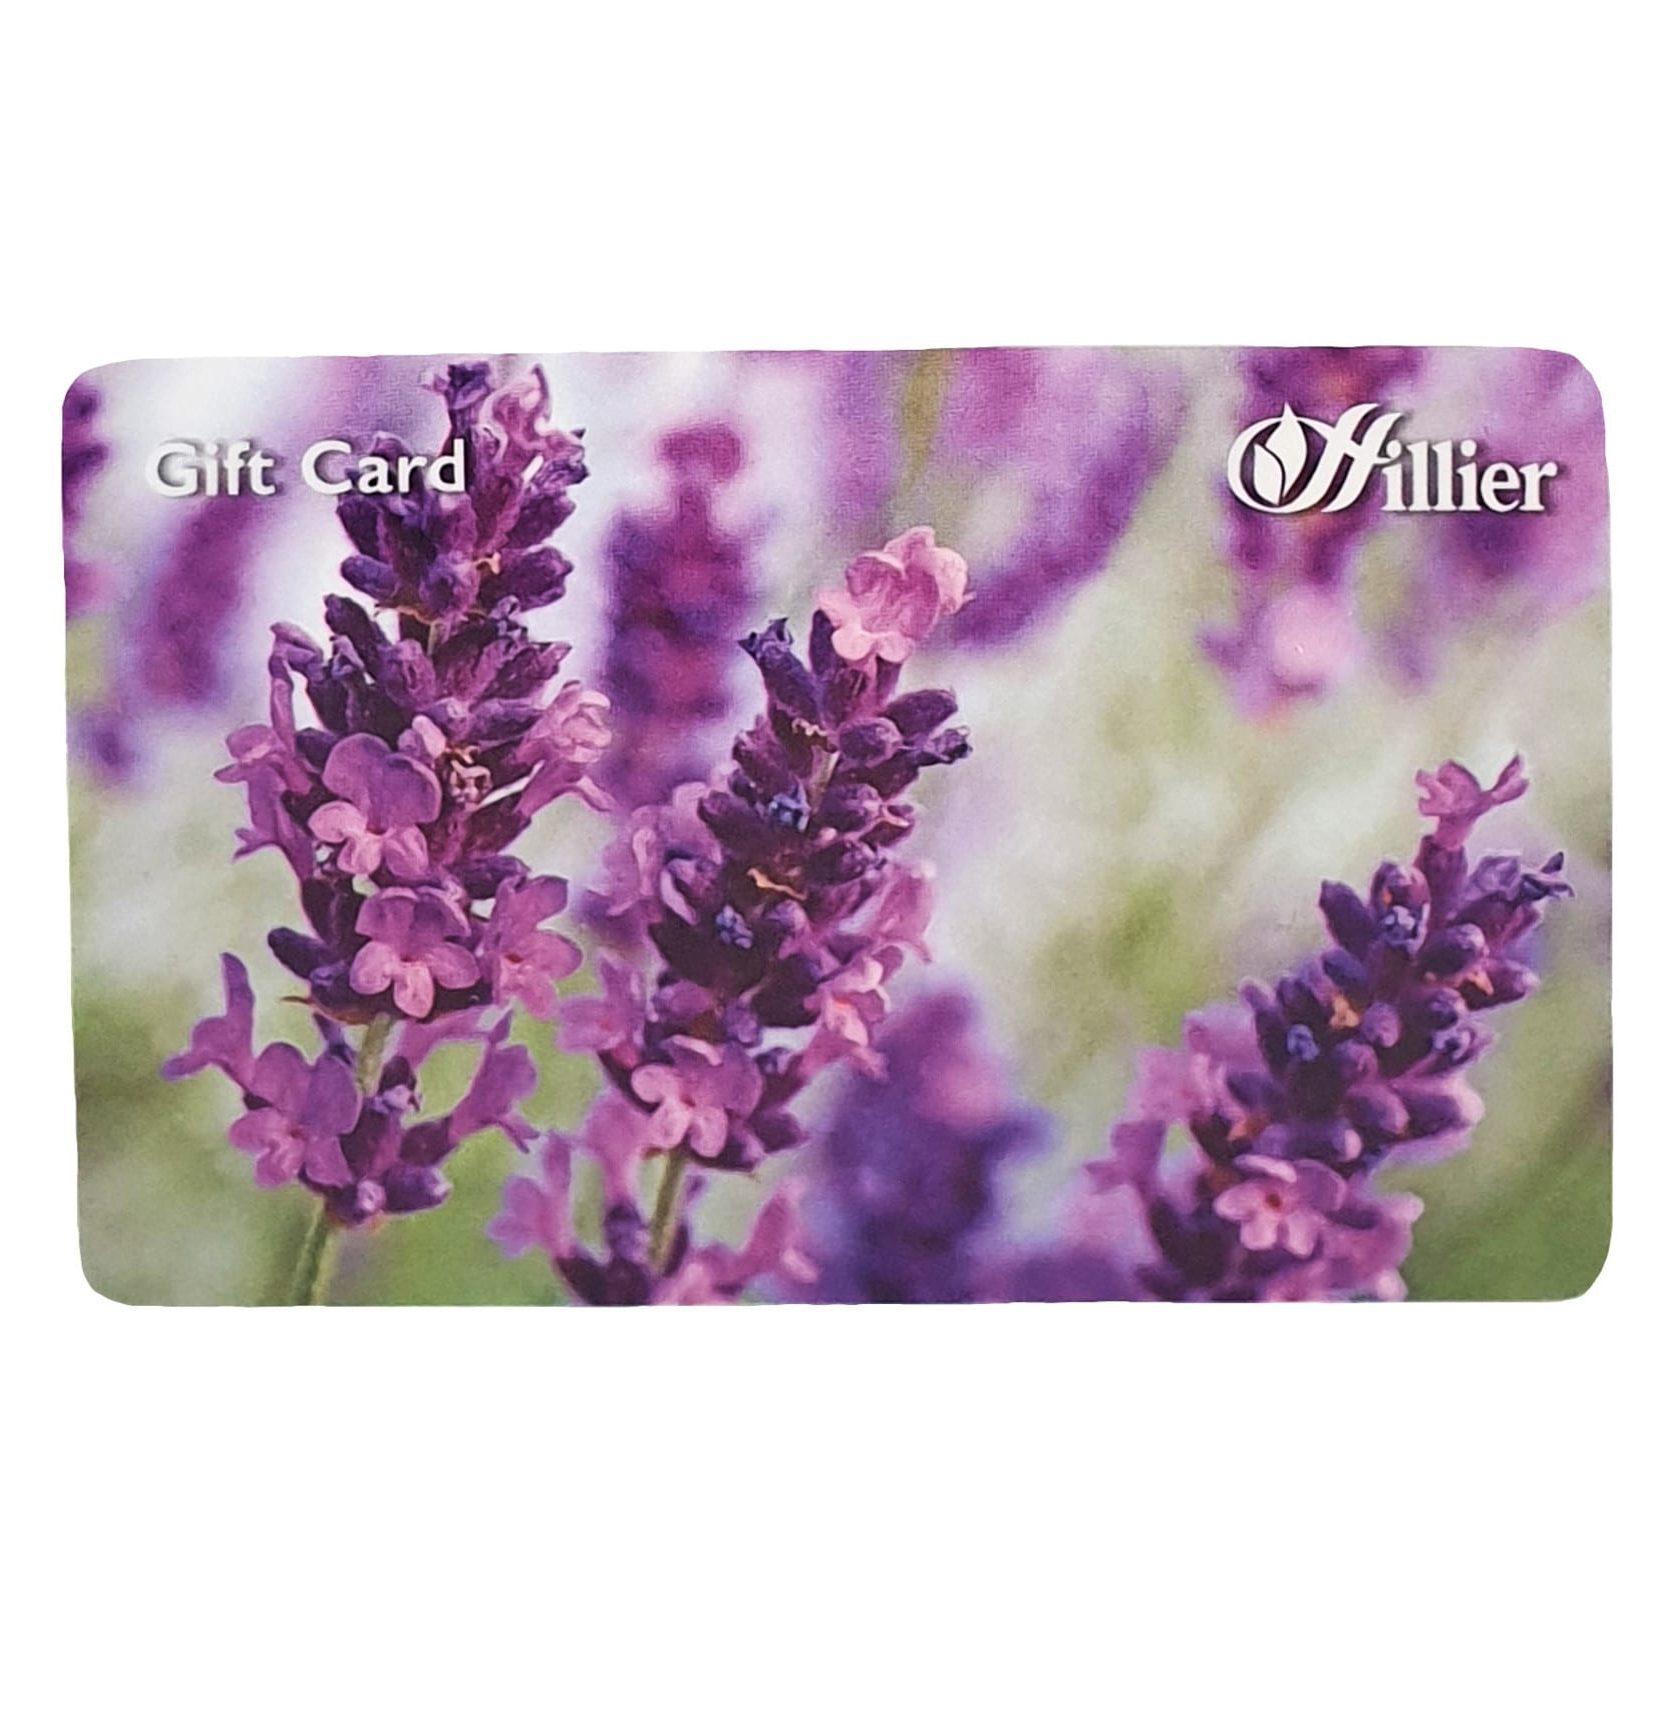 uploads/images/Lavender Gift Card 2 E1624888186280